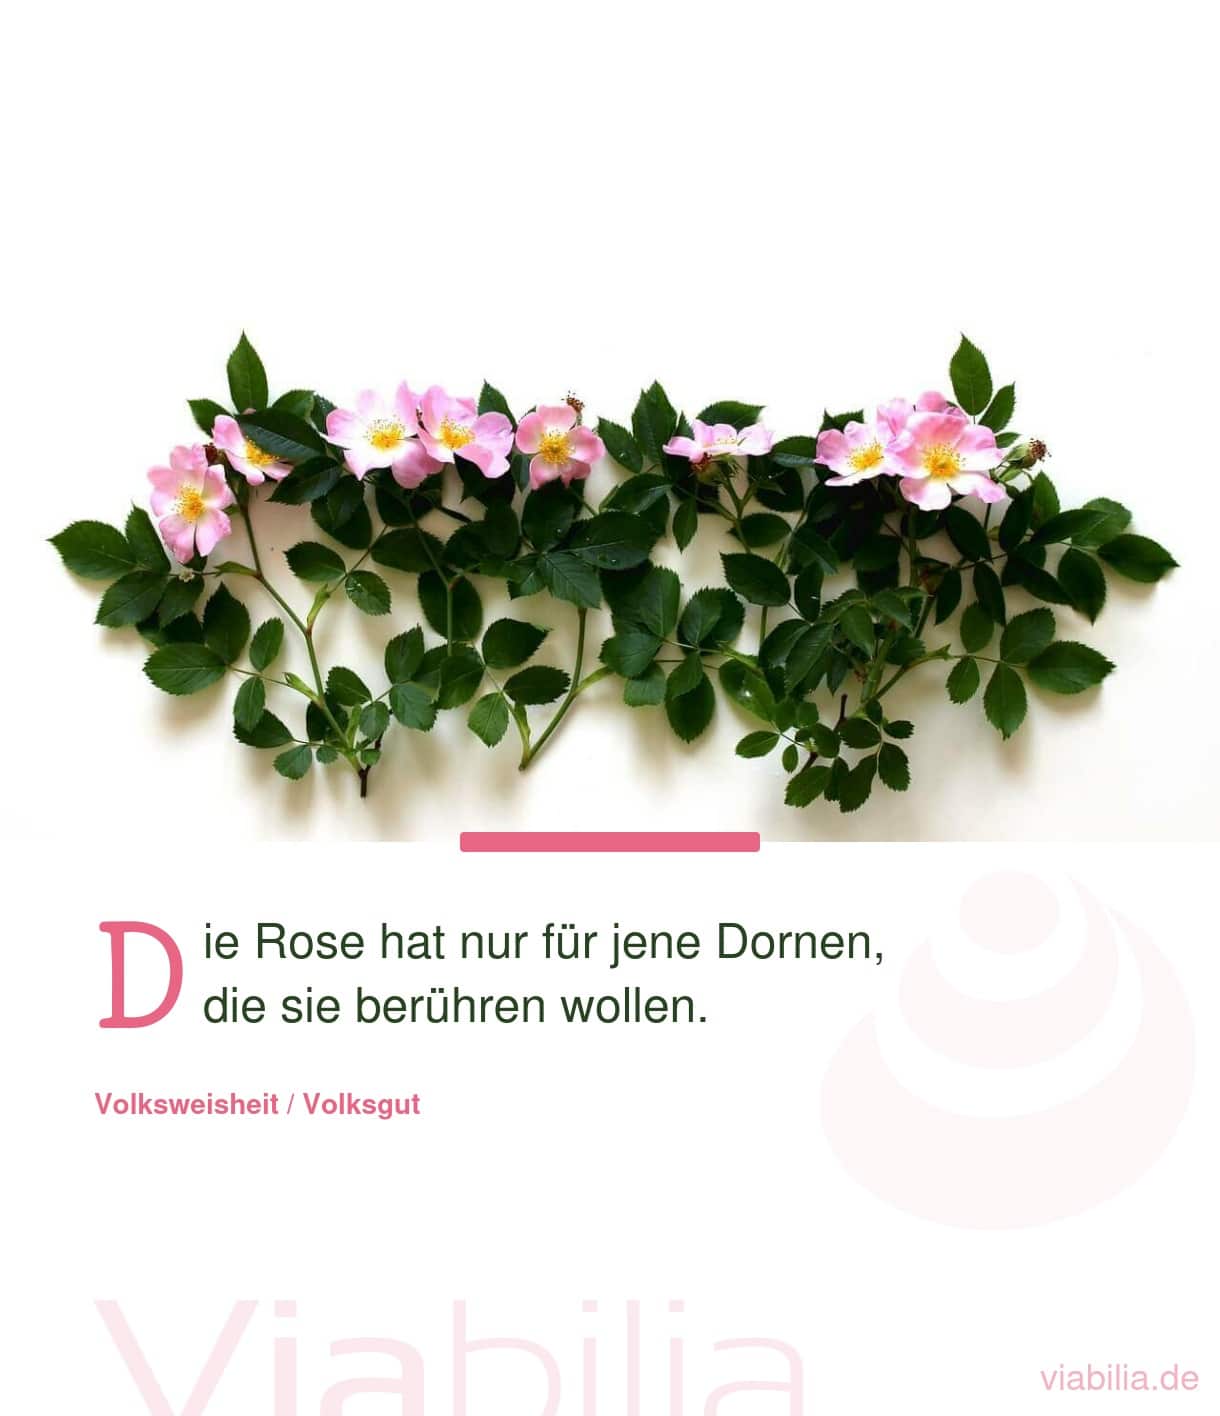 Spruch über die Dornen einer Rose